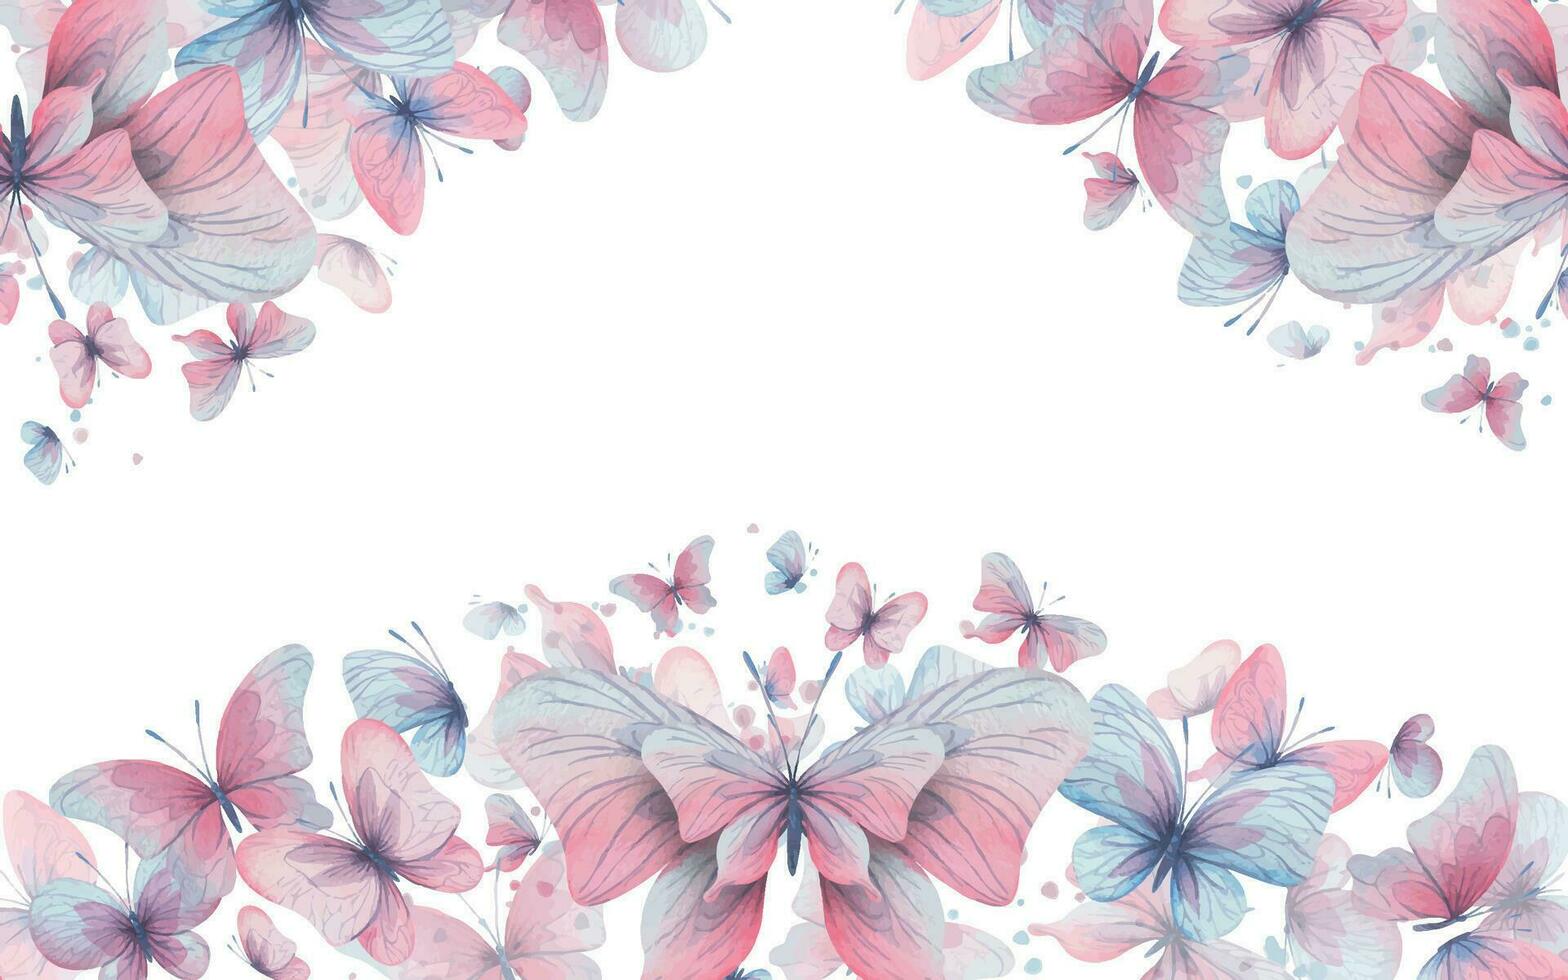 borboletas estão rosa, azul, lilás, vôo, delicado com asas e salpicos do pintar. mão desenhado aguarela ilustração. quadro, bandeira, modelo em uma branco fundo, para Projeto. vetor